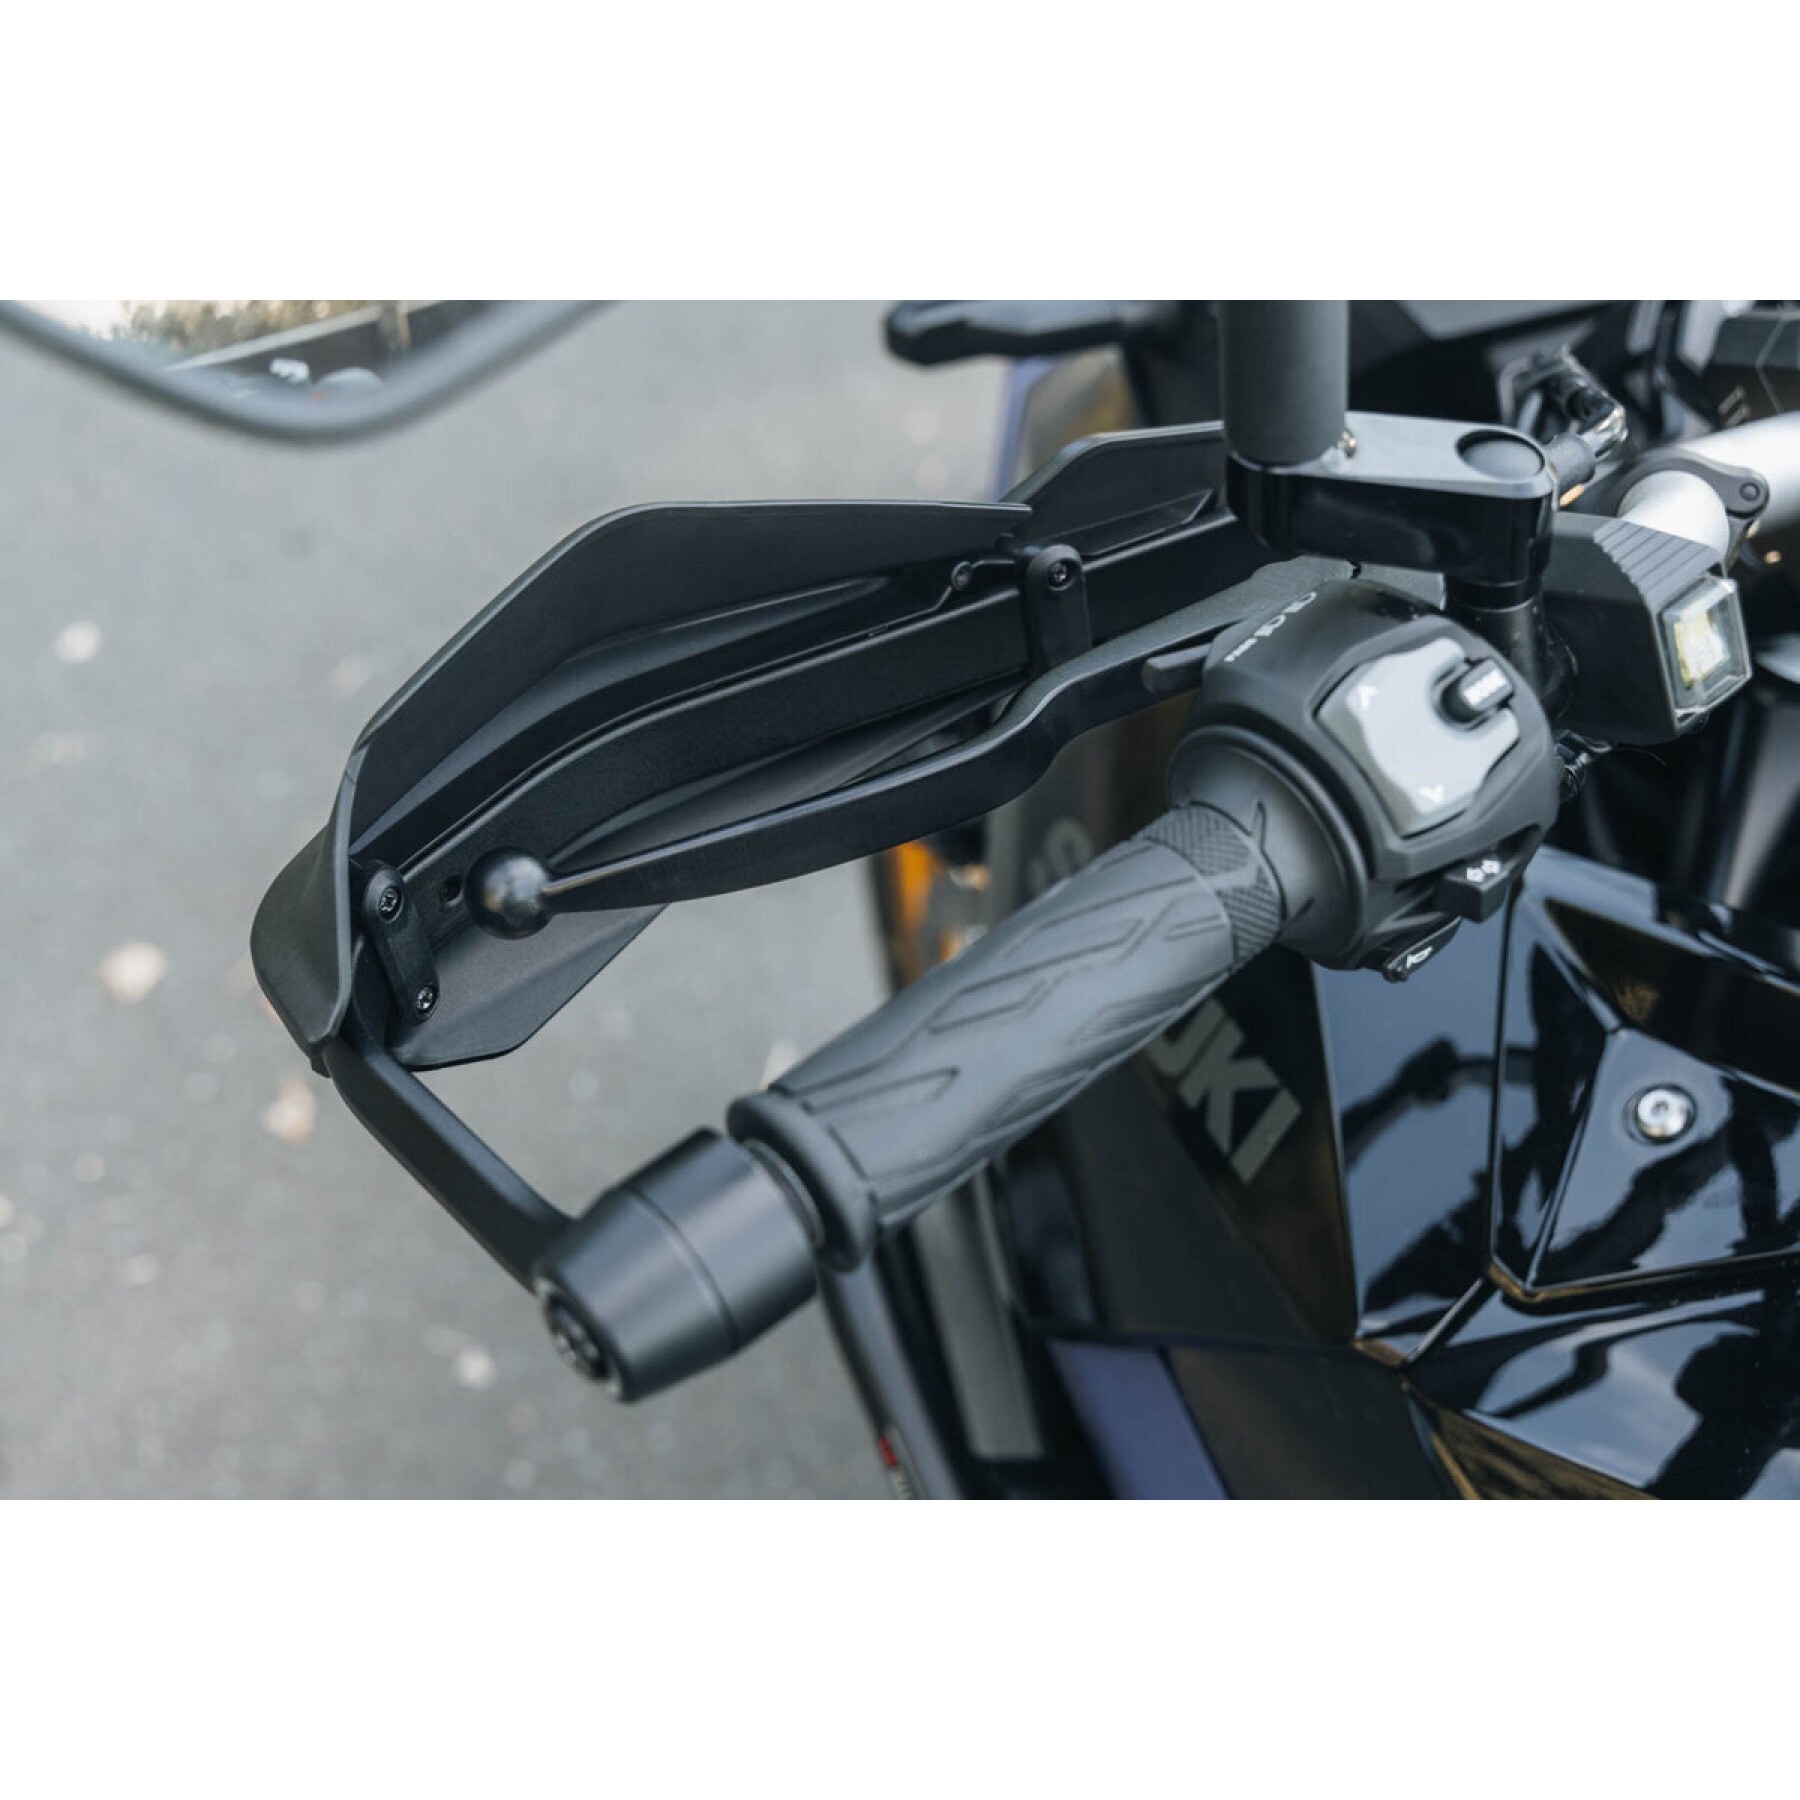 Kit de proteção de mão para motociclos para guiadores ocos SW-Motech Adventure